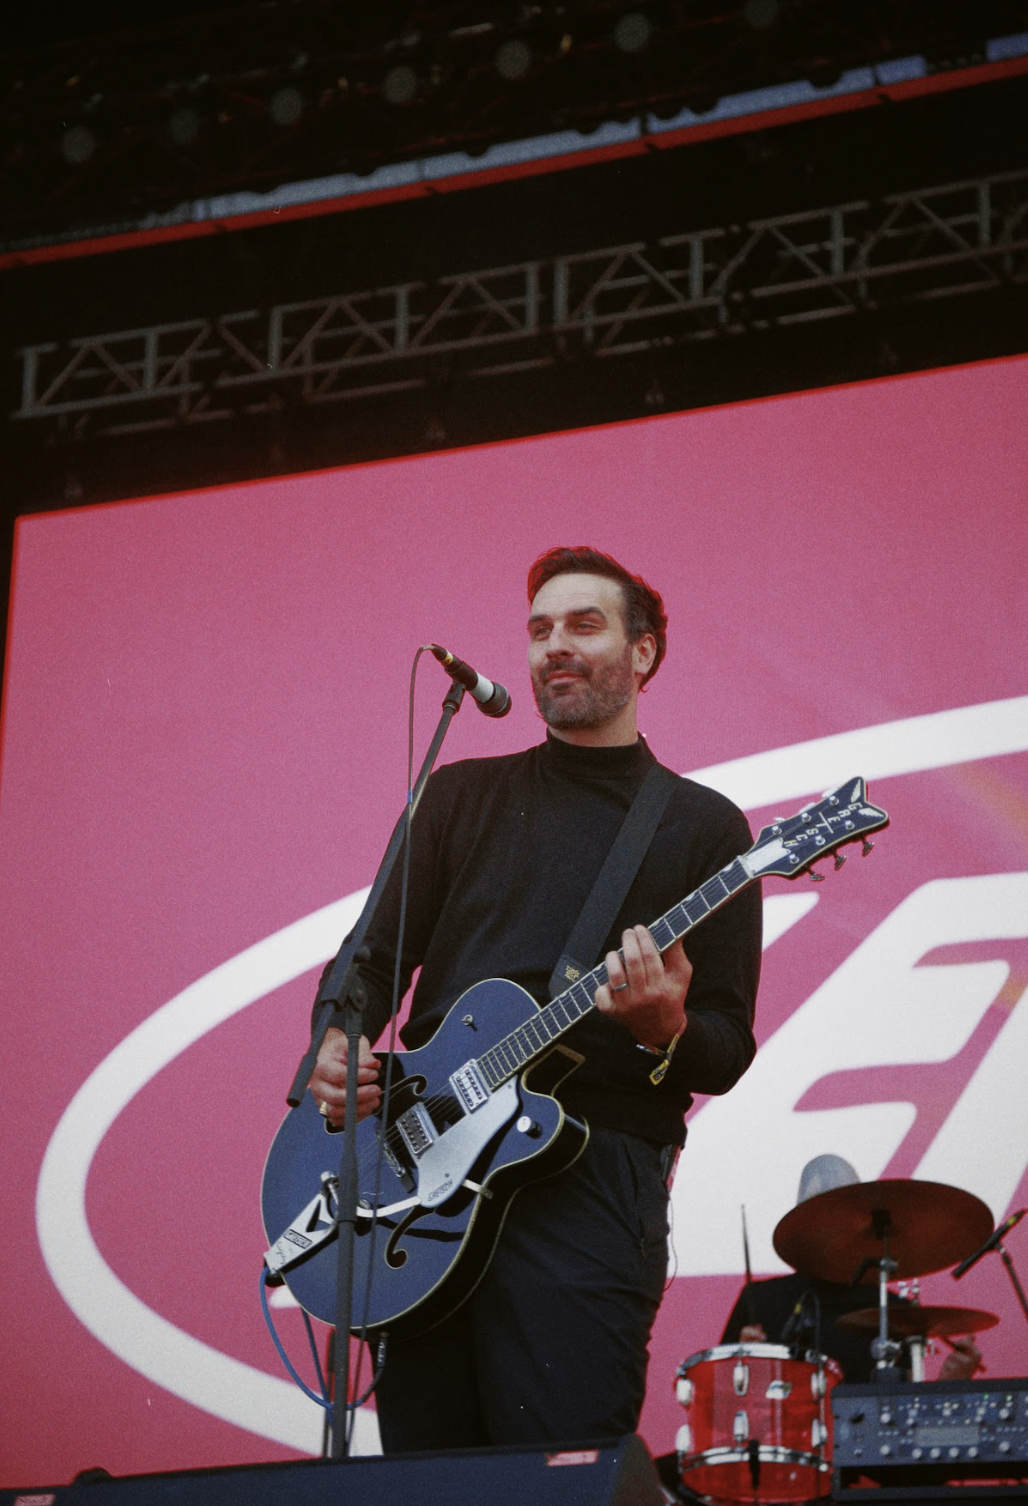 Músico en el escenario tocando una guitarra eléctrica, con una batería detrás y un fondo de pantalla rosa